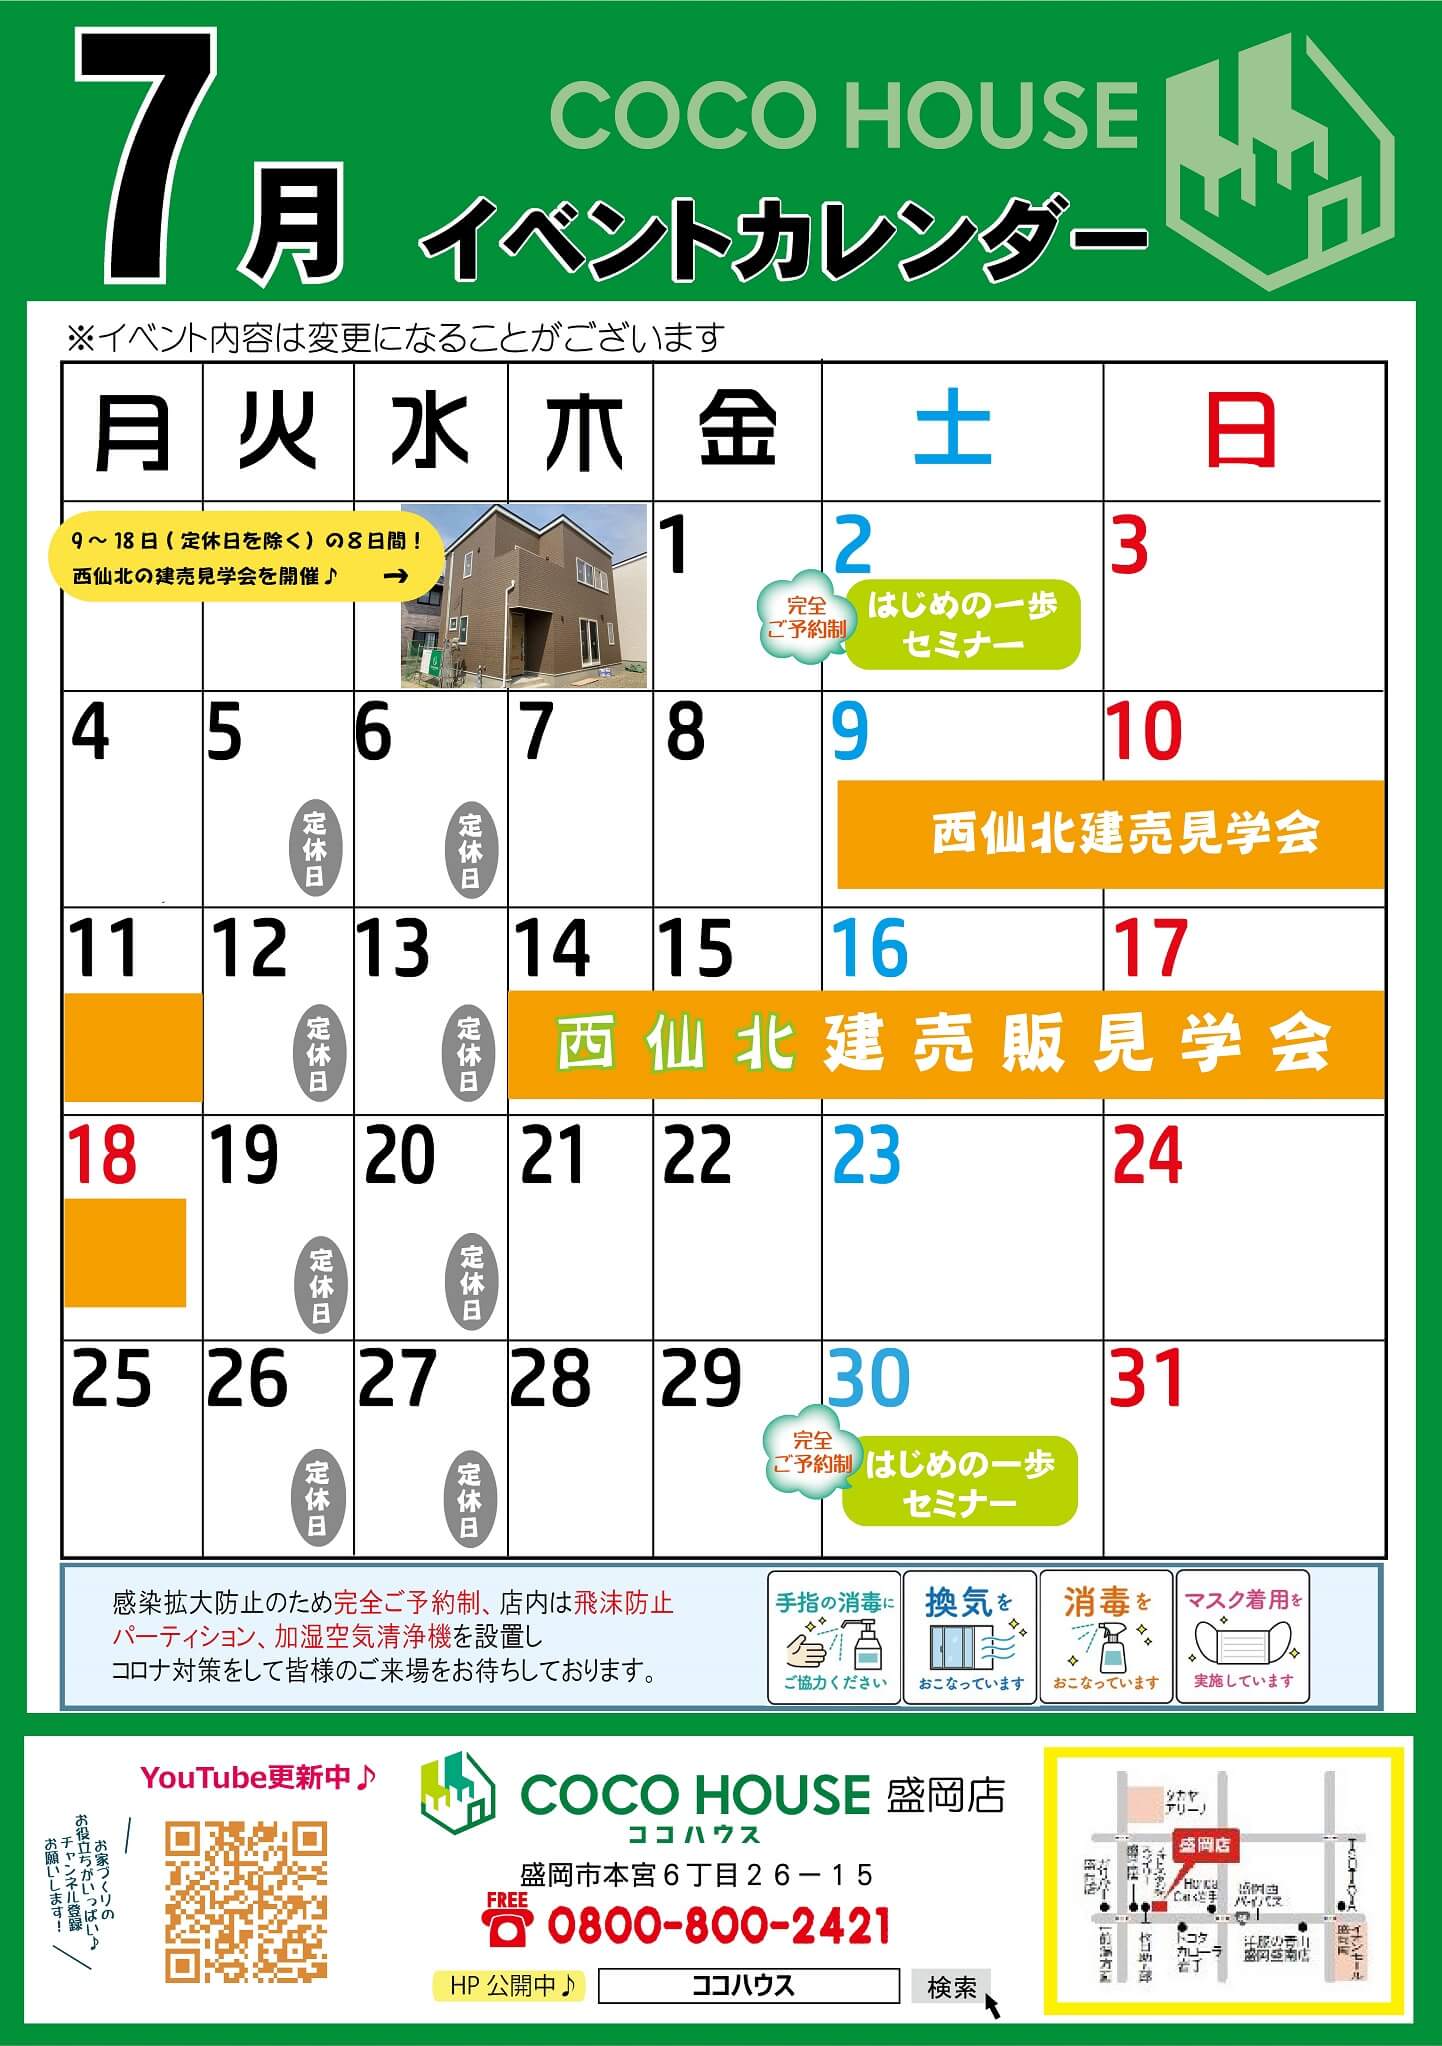 【盛岡店】7月イベントカレンダー